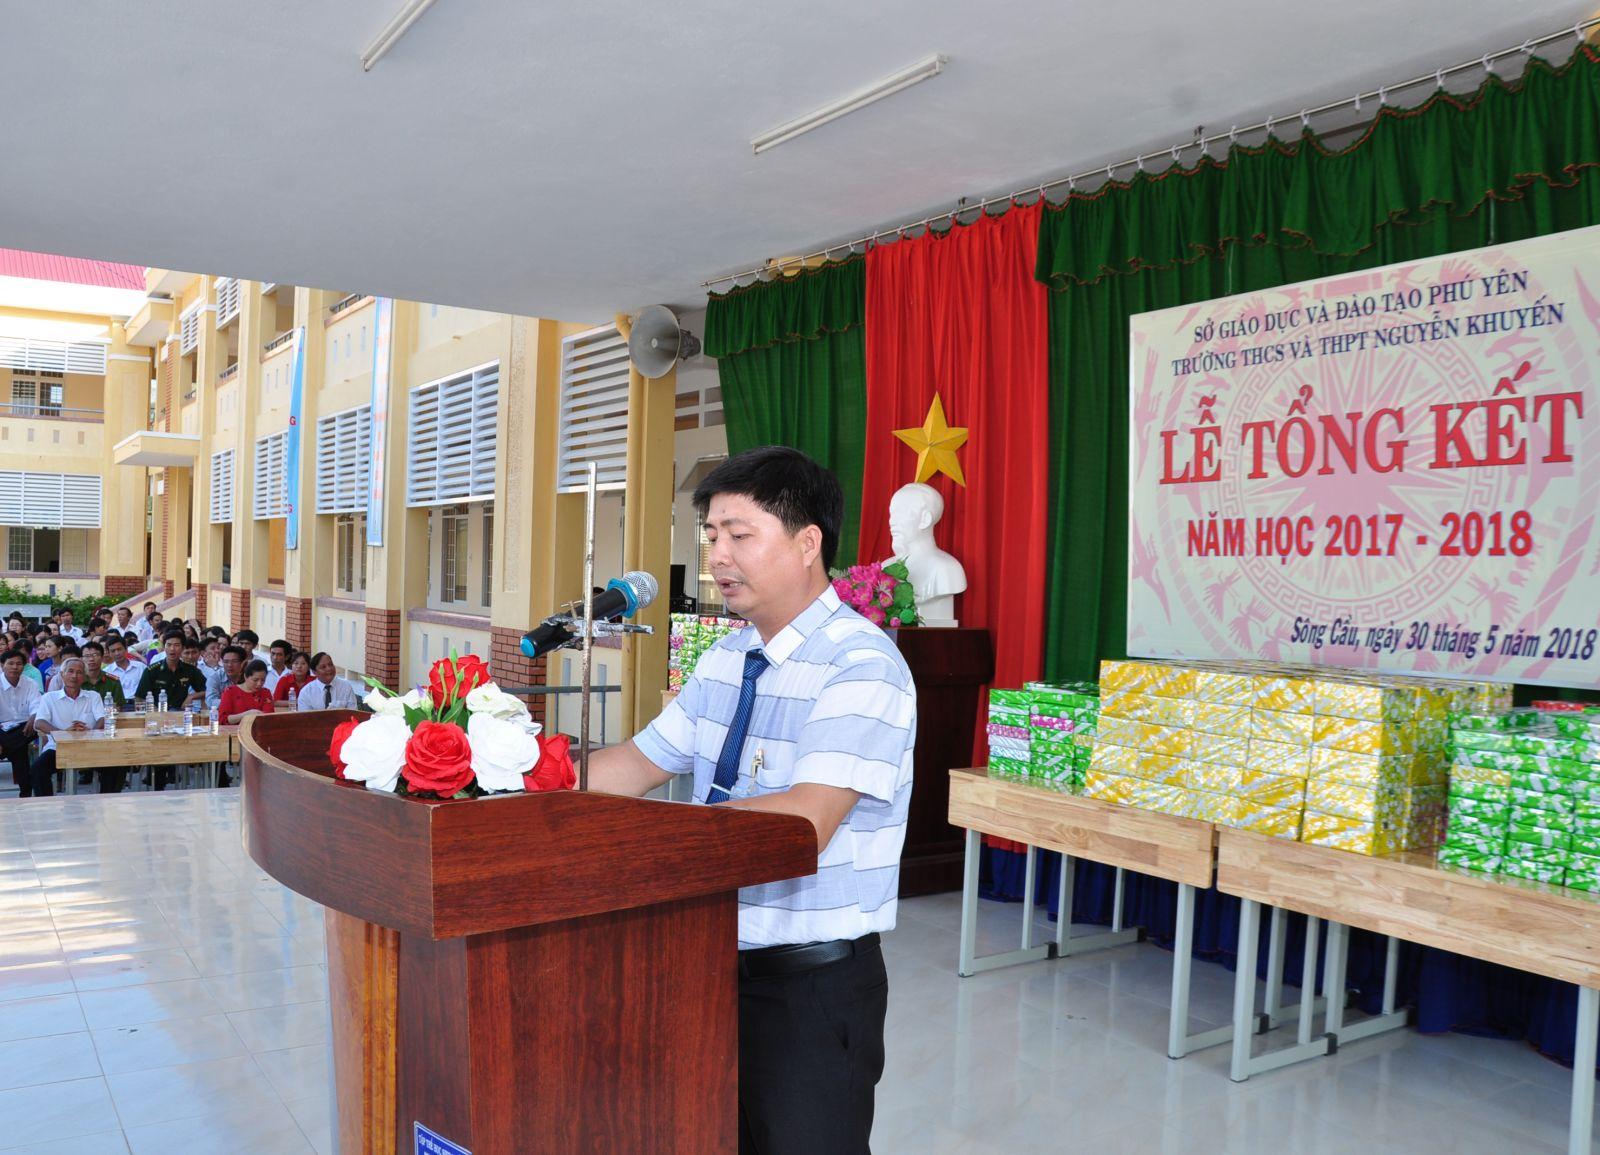 Đánh Giá Trường THCS Và THPT Nguyễn Khuyến Tỉnh Phú Yên Có Tốt Không